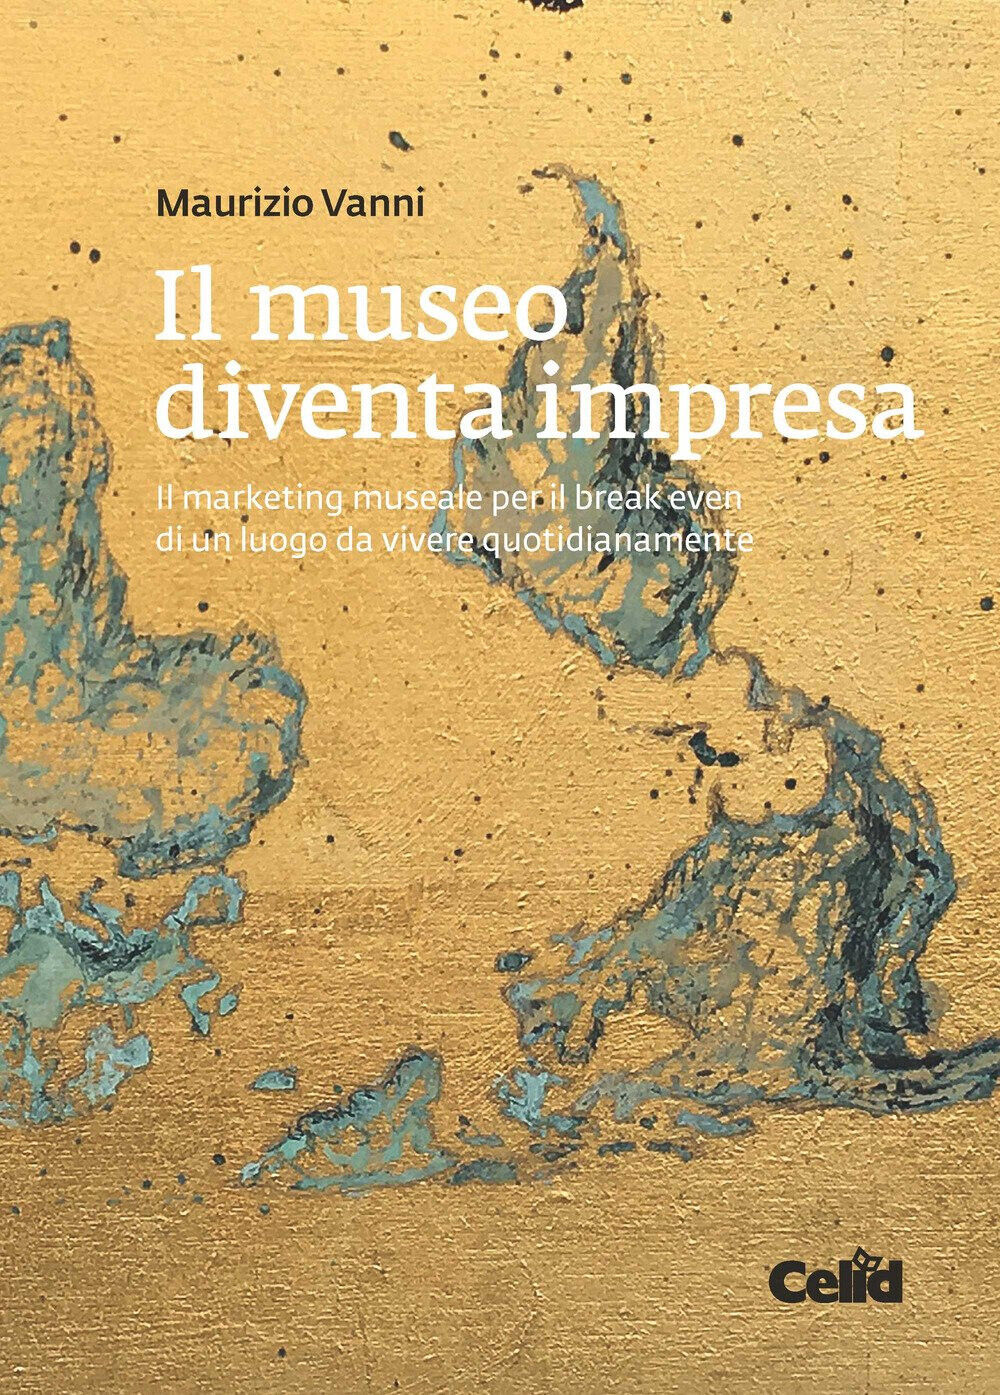 Il museo diventa impresa - Maurizio Vanni - Celid, 2018